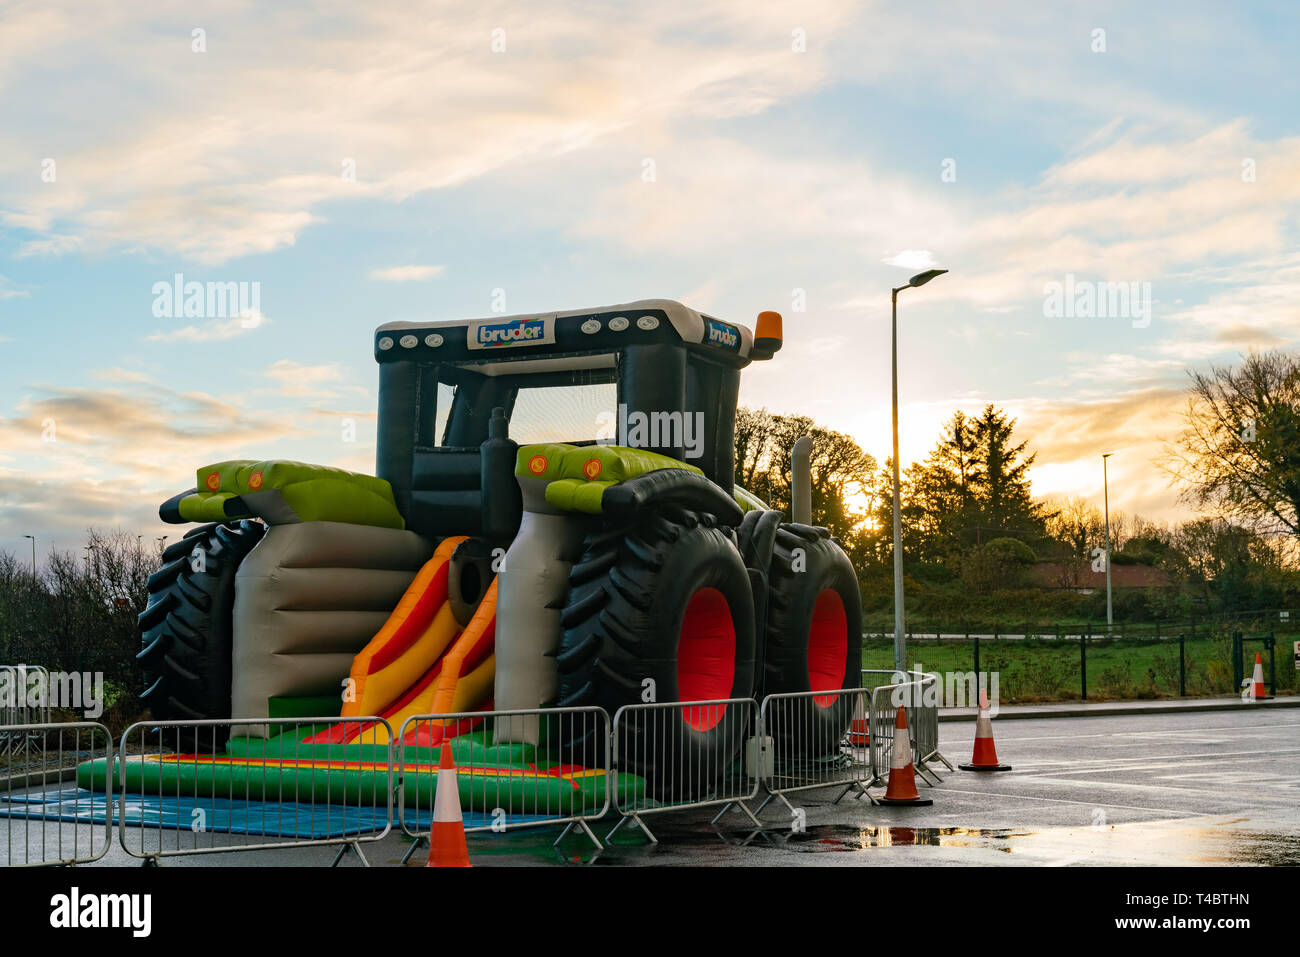 Dublin, 27 octobre : Matin vue d'une imposante construction voiture jouet gonflable forme le Oct 27, 2018 à Dublin, Irlande Banque D'Images